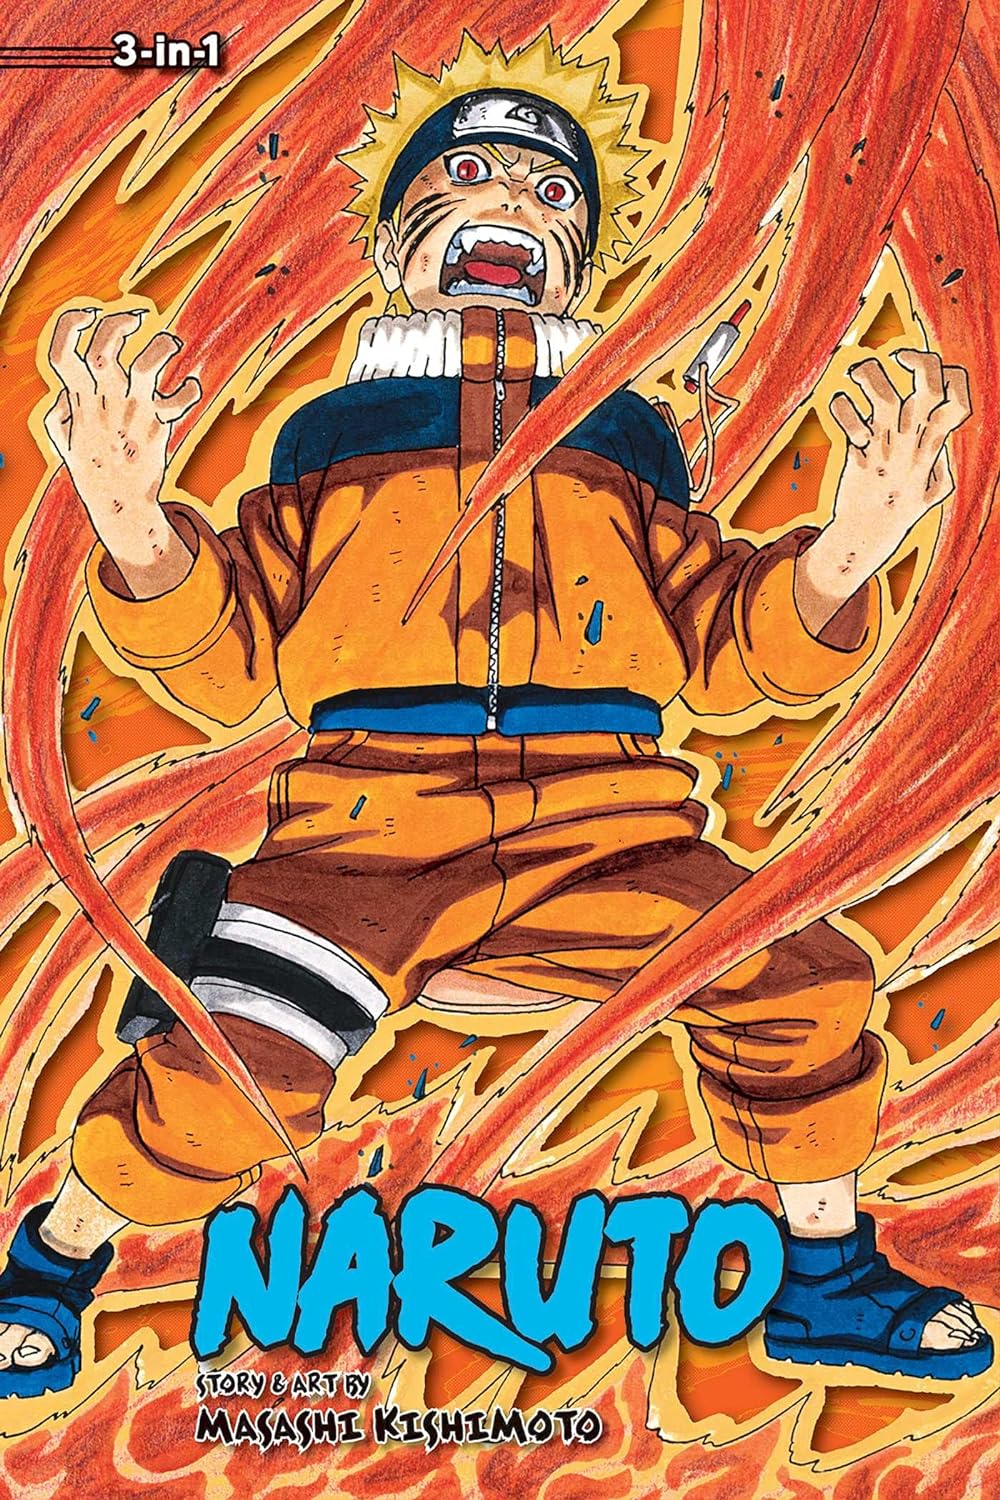 Naruto (3-in-1 Edition) Vol. 9 (Vol. 25, 26 & 27)